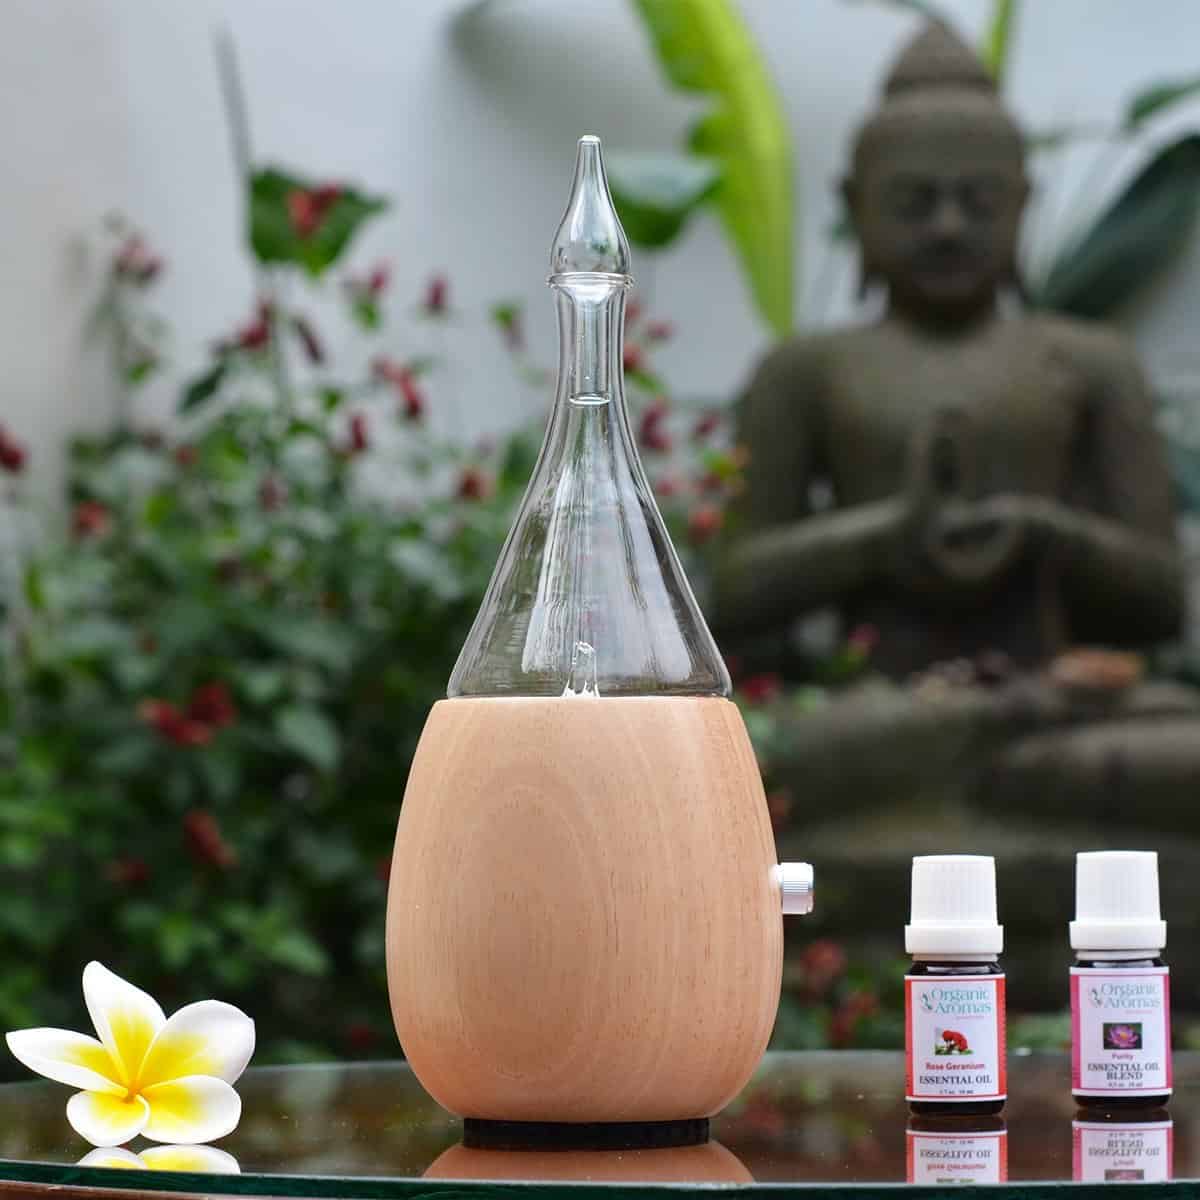 Organic Aromas Raindrop - essential oil diffuser